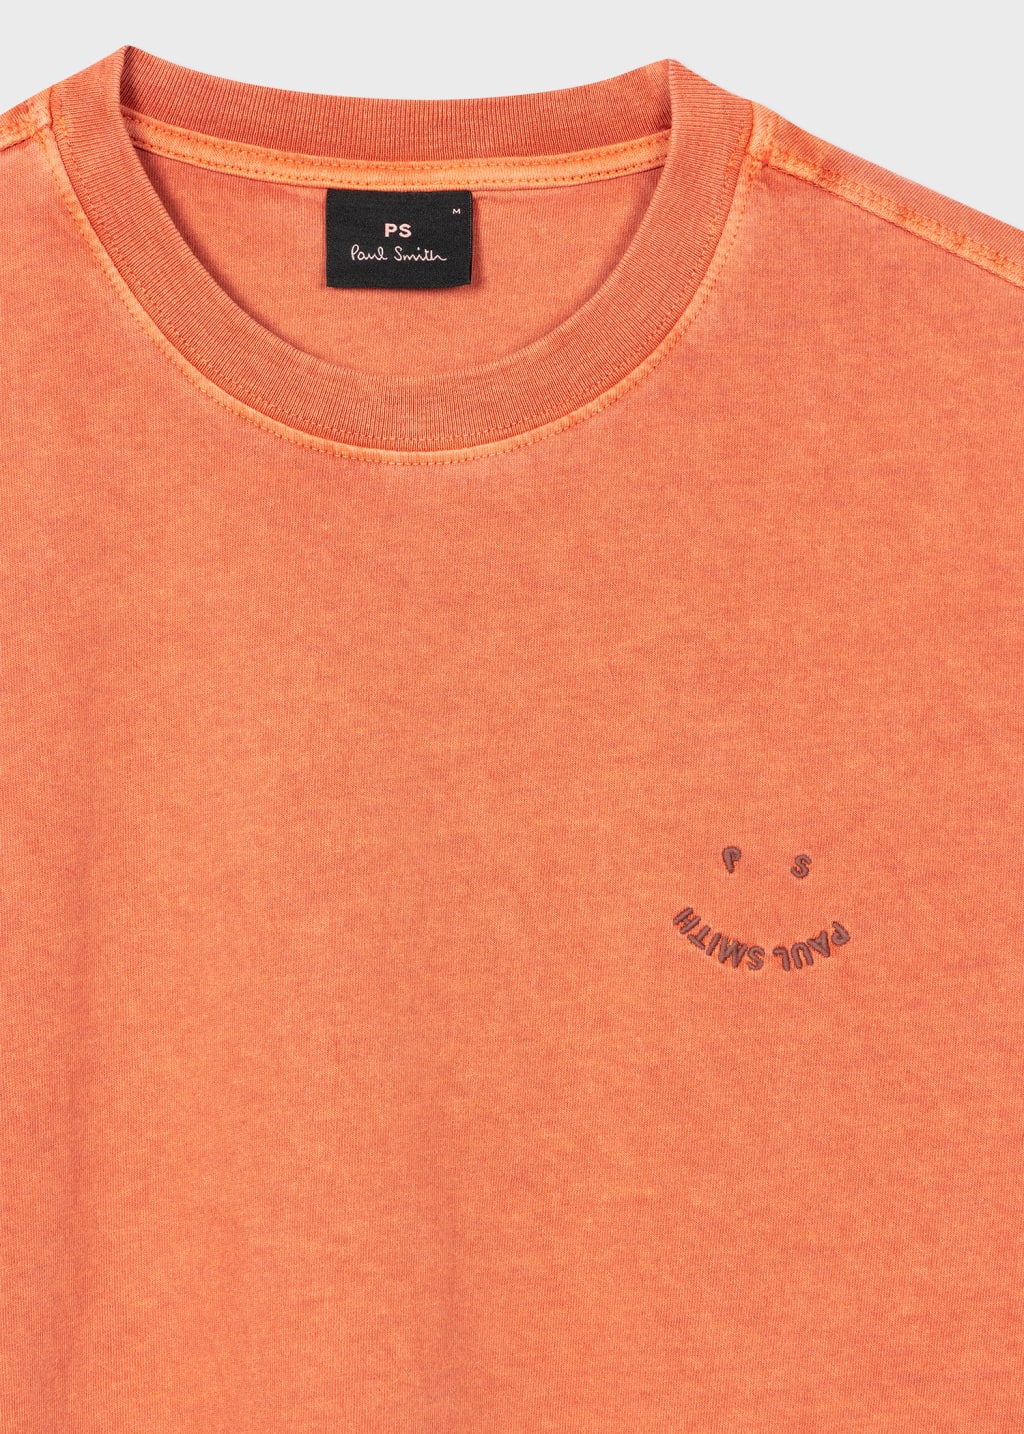 Detail View - Burnt Orange Cotton 'Happy' T-Shirt Paul Smith